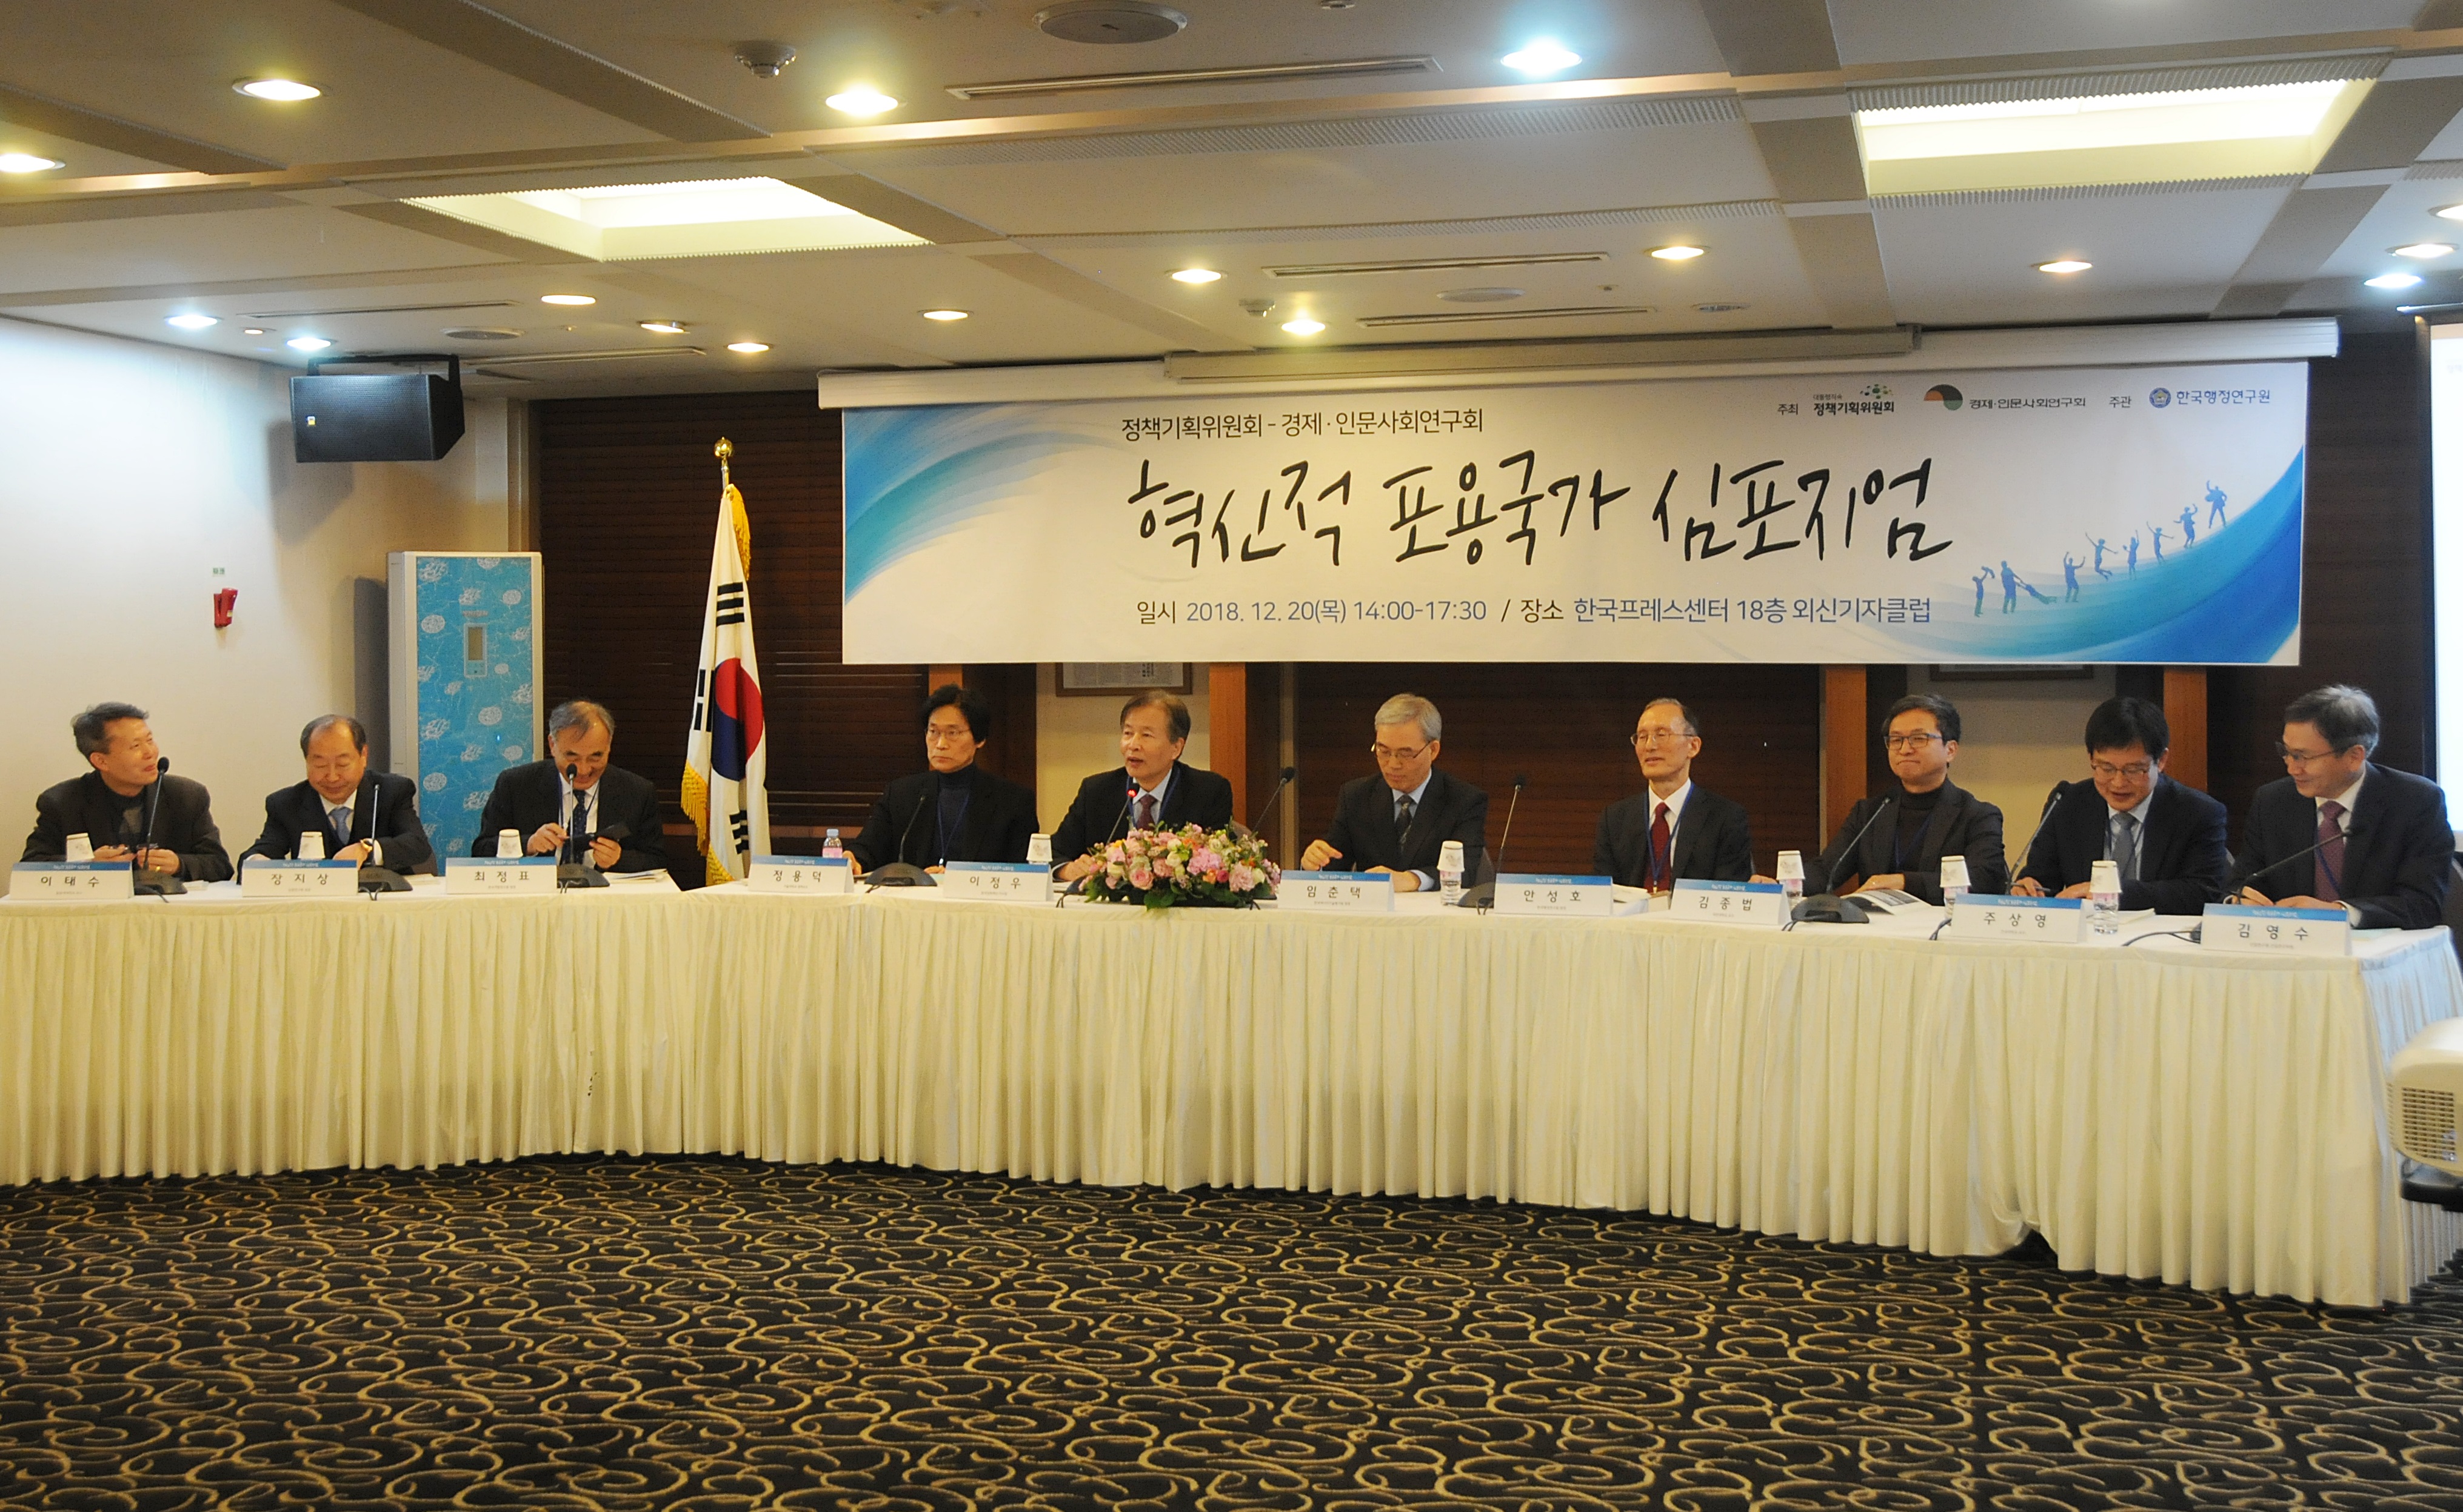 안성호(오른쪽 네 번째) 한국행정연구원 원장, 이정우(오른쪽 여섯번째) 한국장학재단 이사장 등 20일 서울의 한국프레스센터에서 열린 ‘혁신적 포용국가 심포지머에서 참석자들이 토론을 하고 있다. 